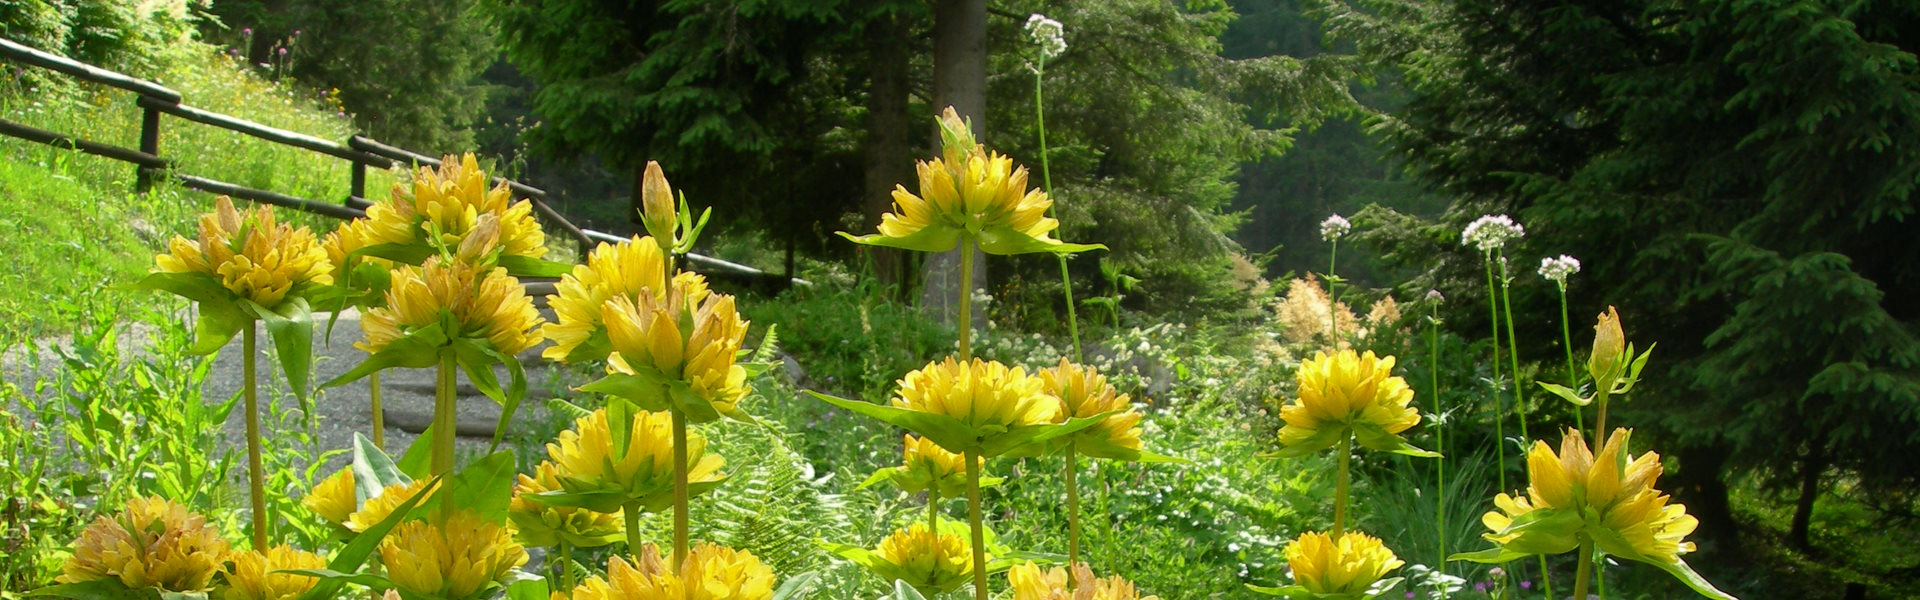 Giardino botanico alpino di Castel Savoia